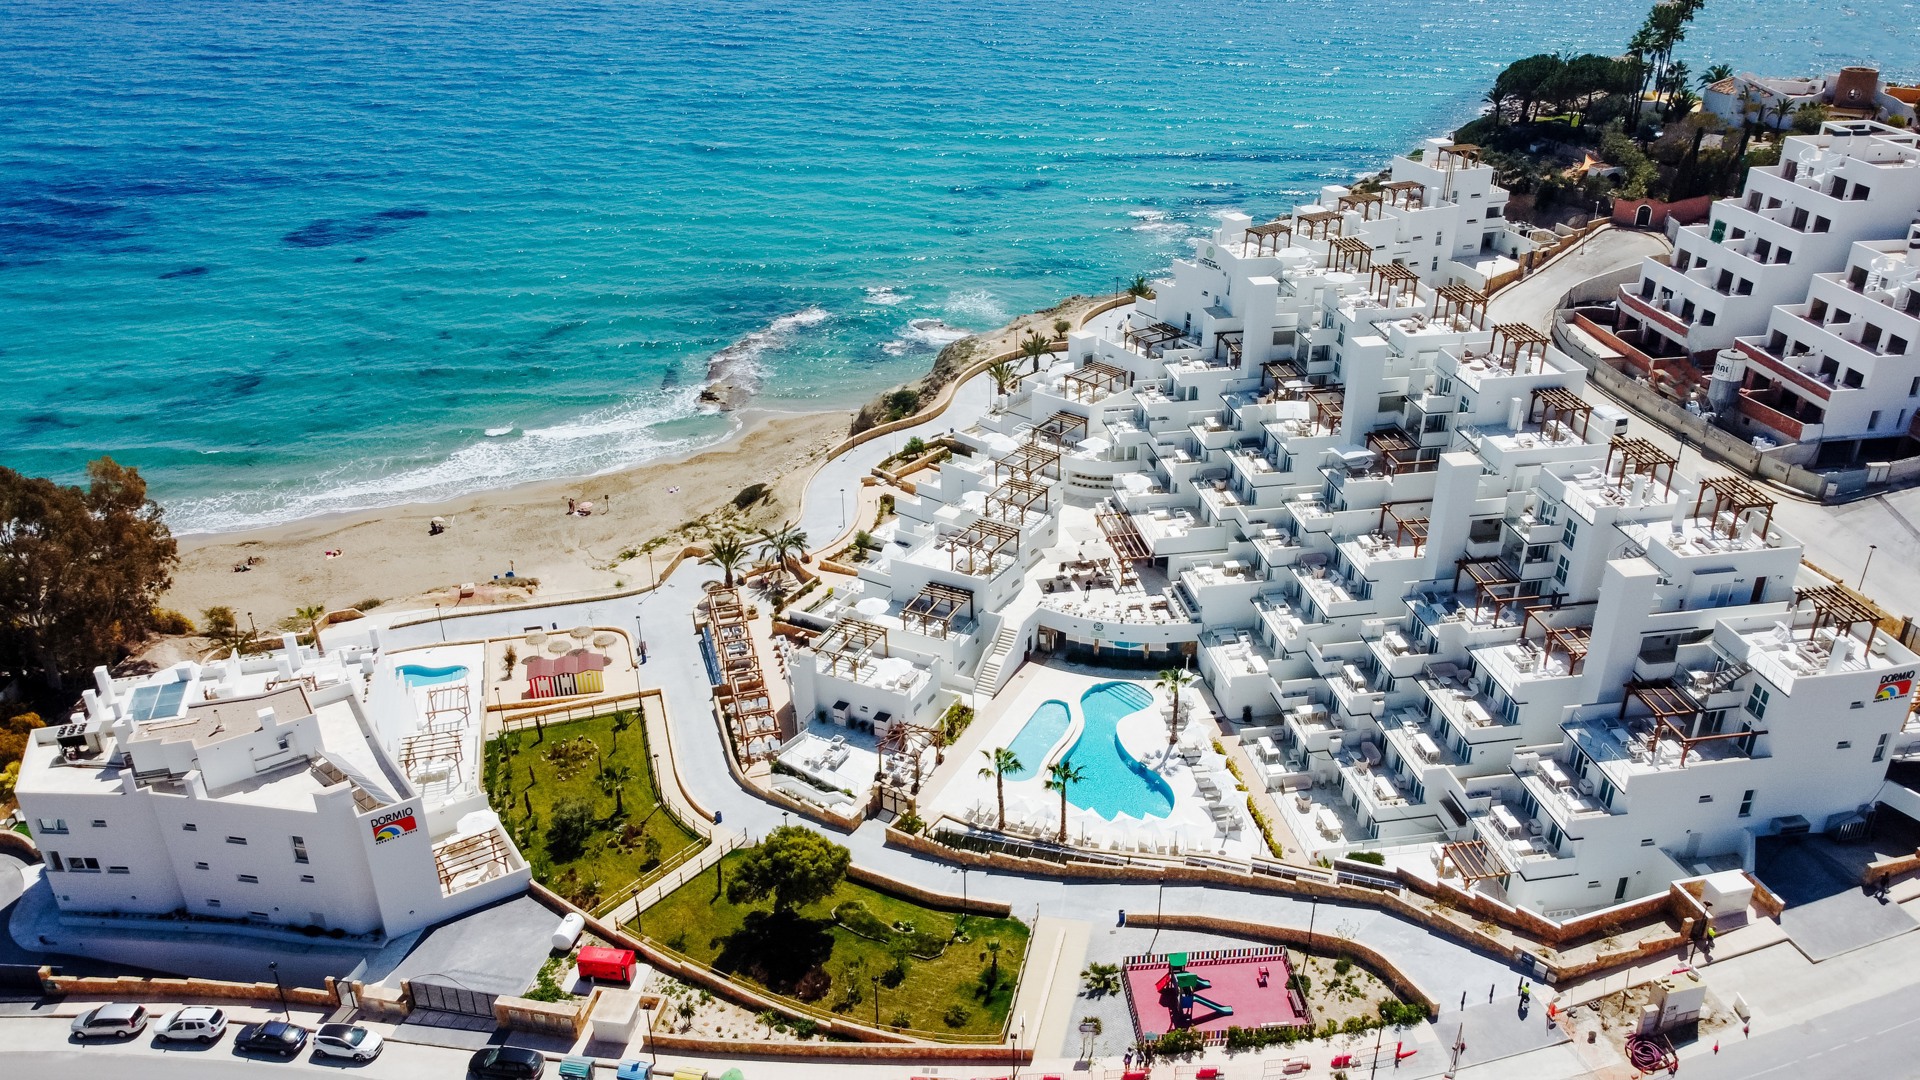 Aanrader: verblijf op een luxe strandresort in El Campello